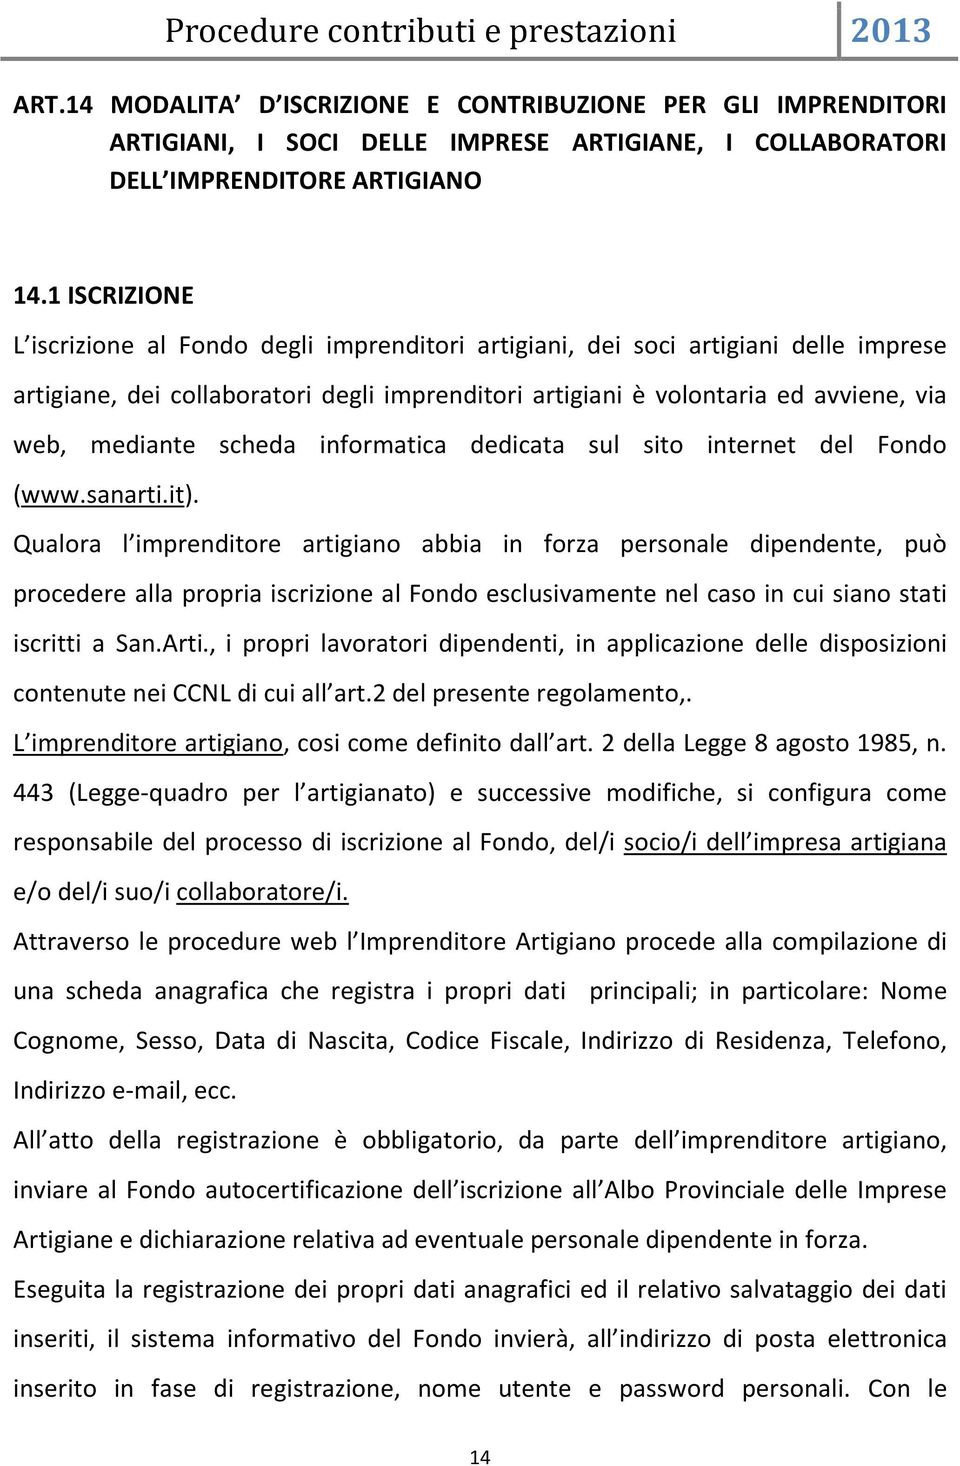 scheda informatica dedicata sul sito internet del Fondo (www.sanarti.it).